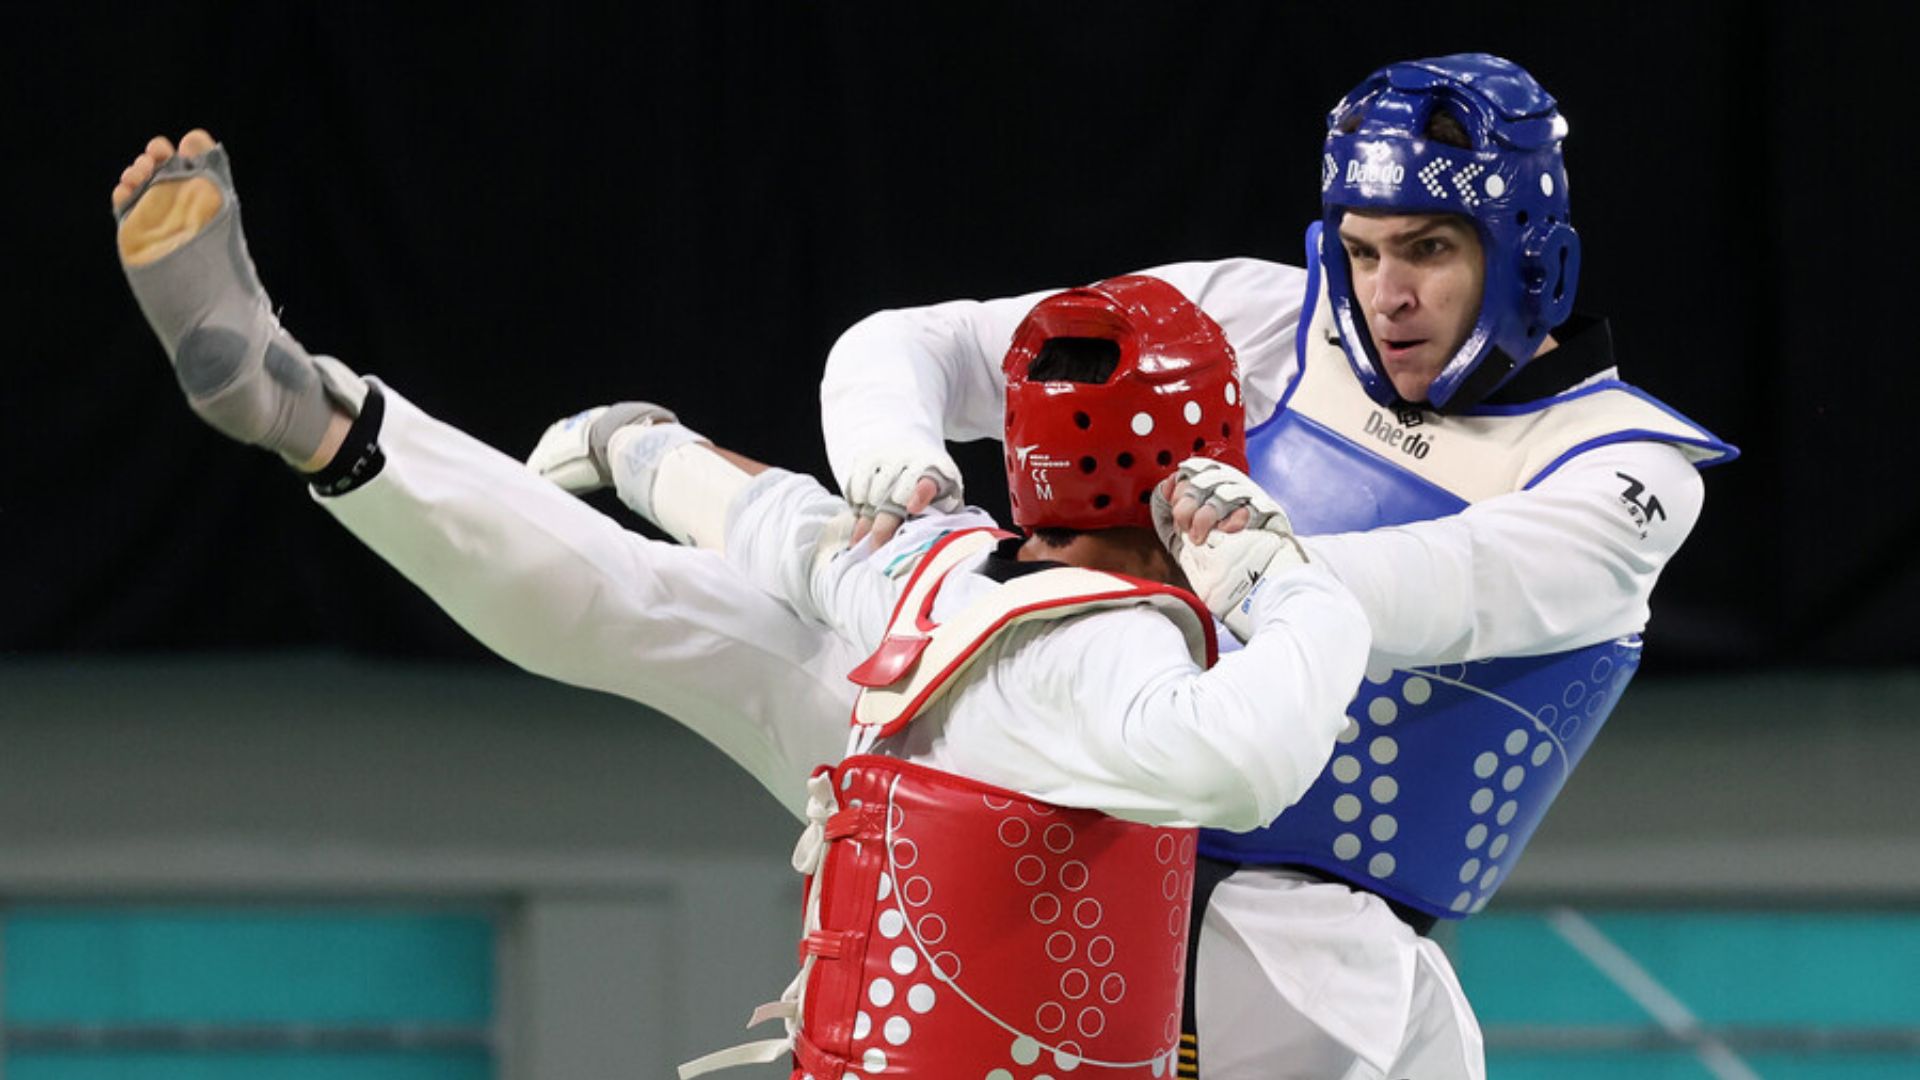 Estados Unidos domina en el taekwondo llegando a finales masculinas y femeninas